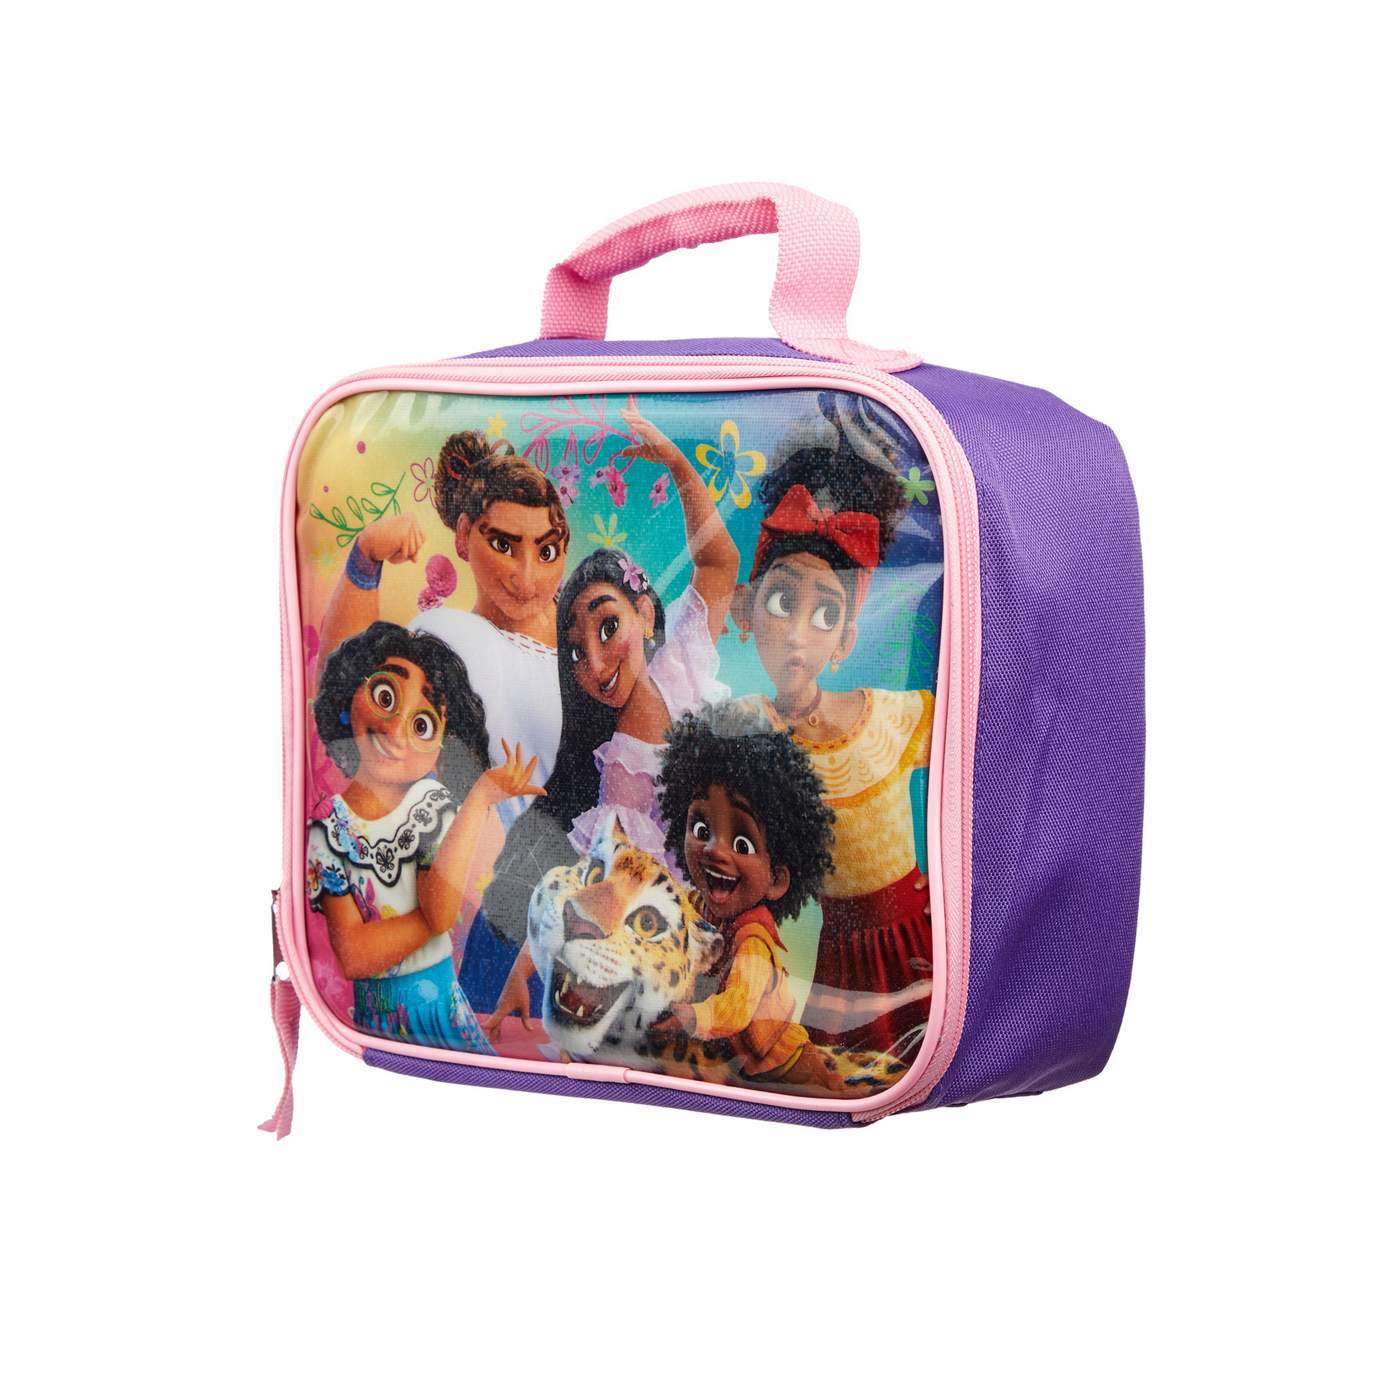 Disney Encanto Lunch Bag; image 2 of 2